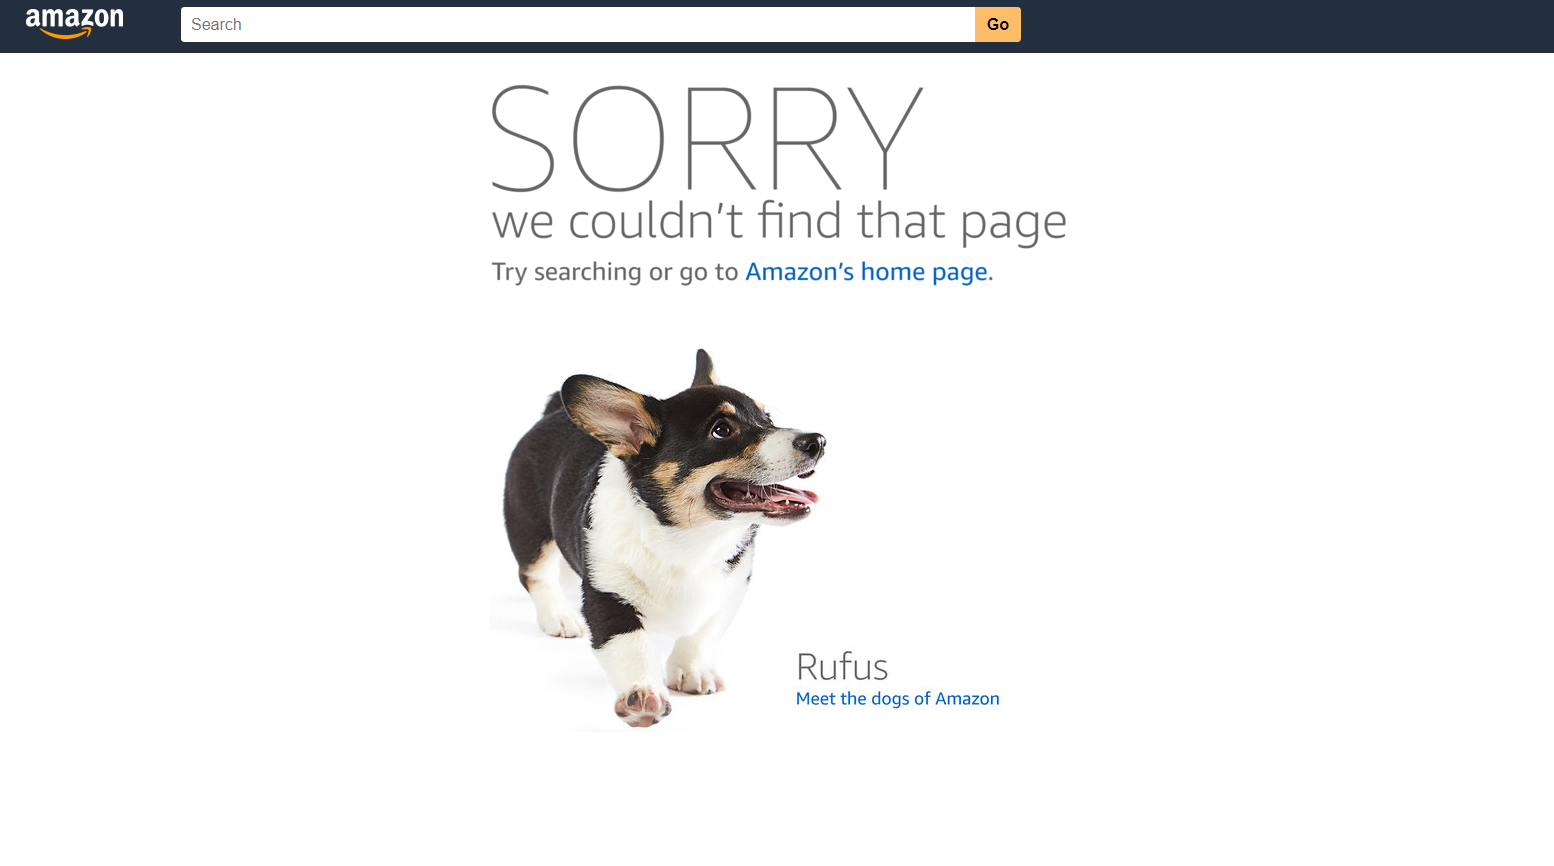 A 404 error on Amazon